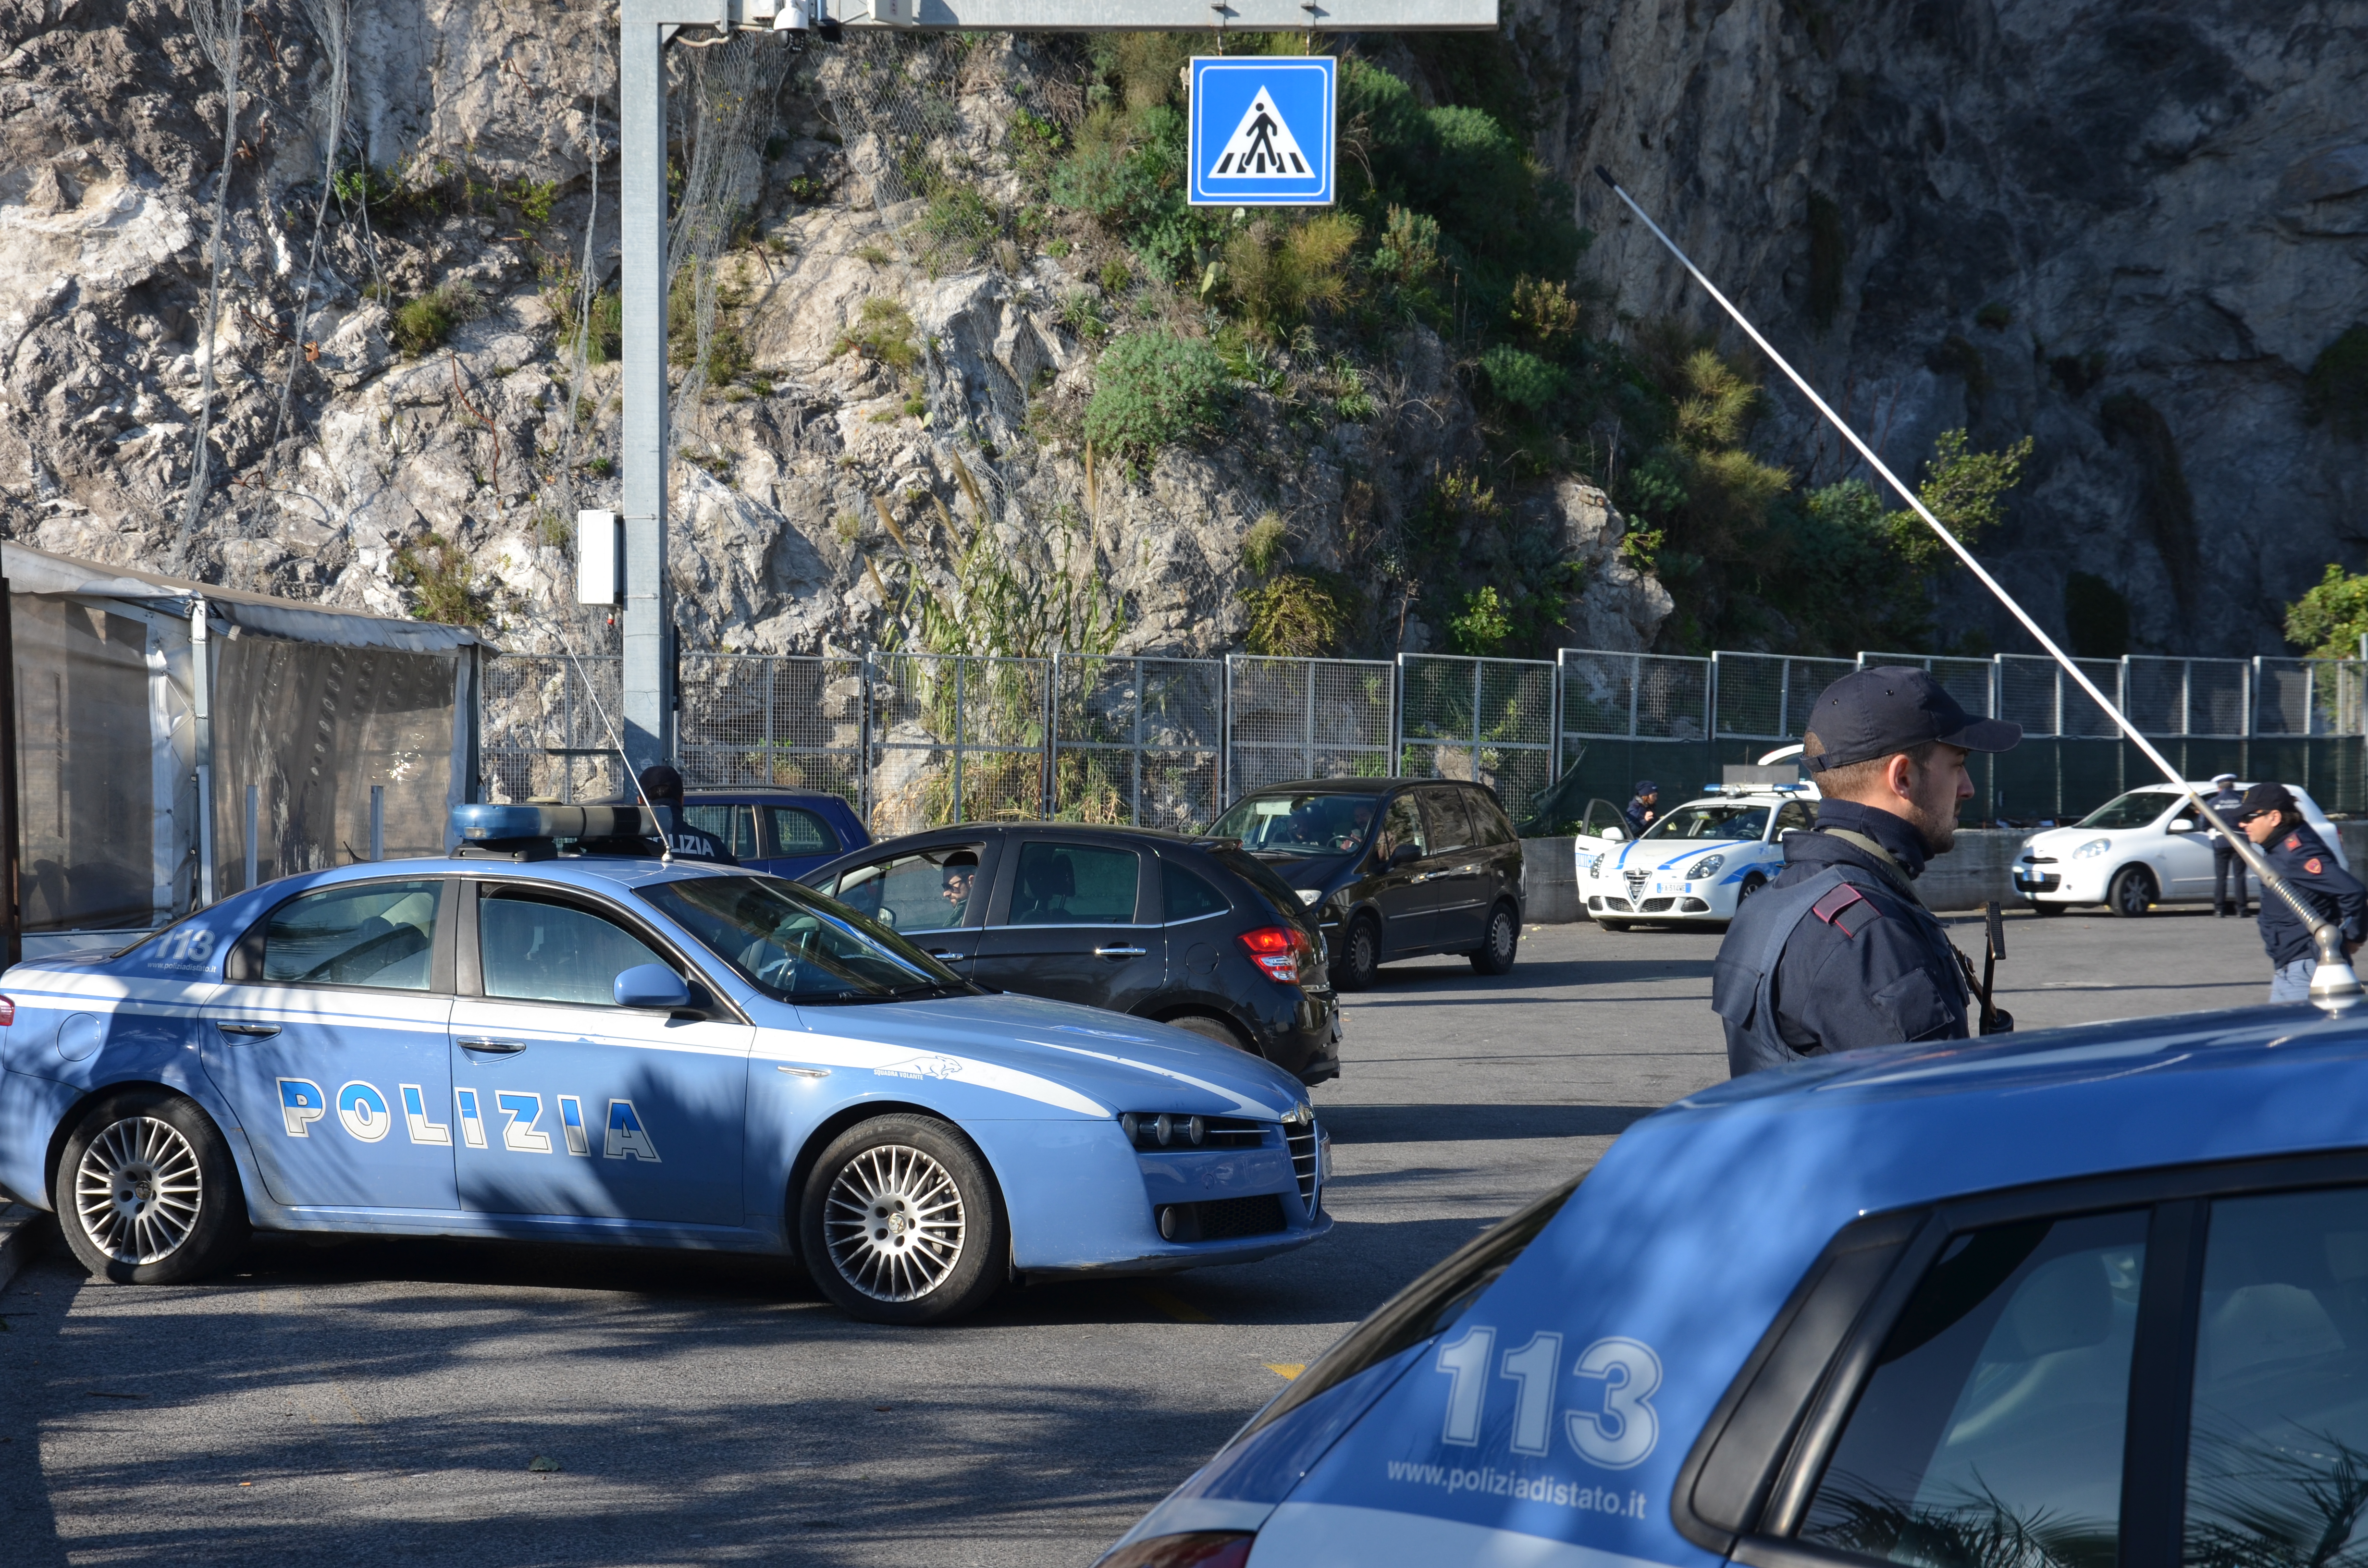 Salerno, Polizia di Stato:  evade  dagli arresti domiciliari, arrestato e tradotto in carcere.